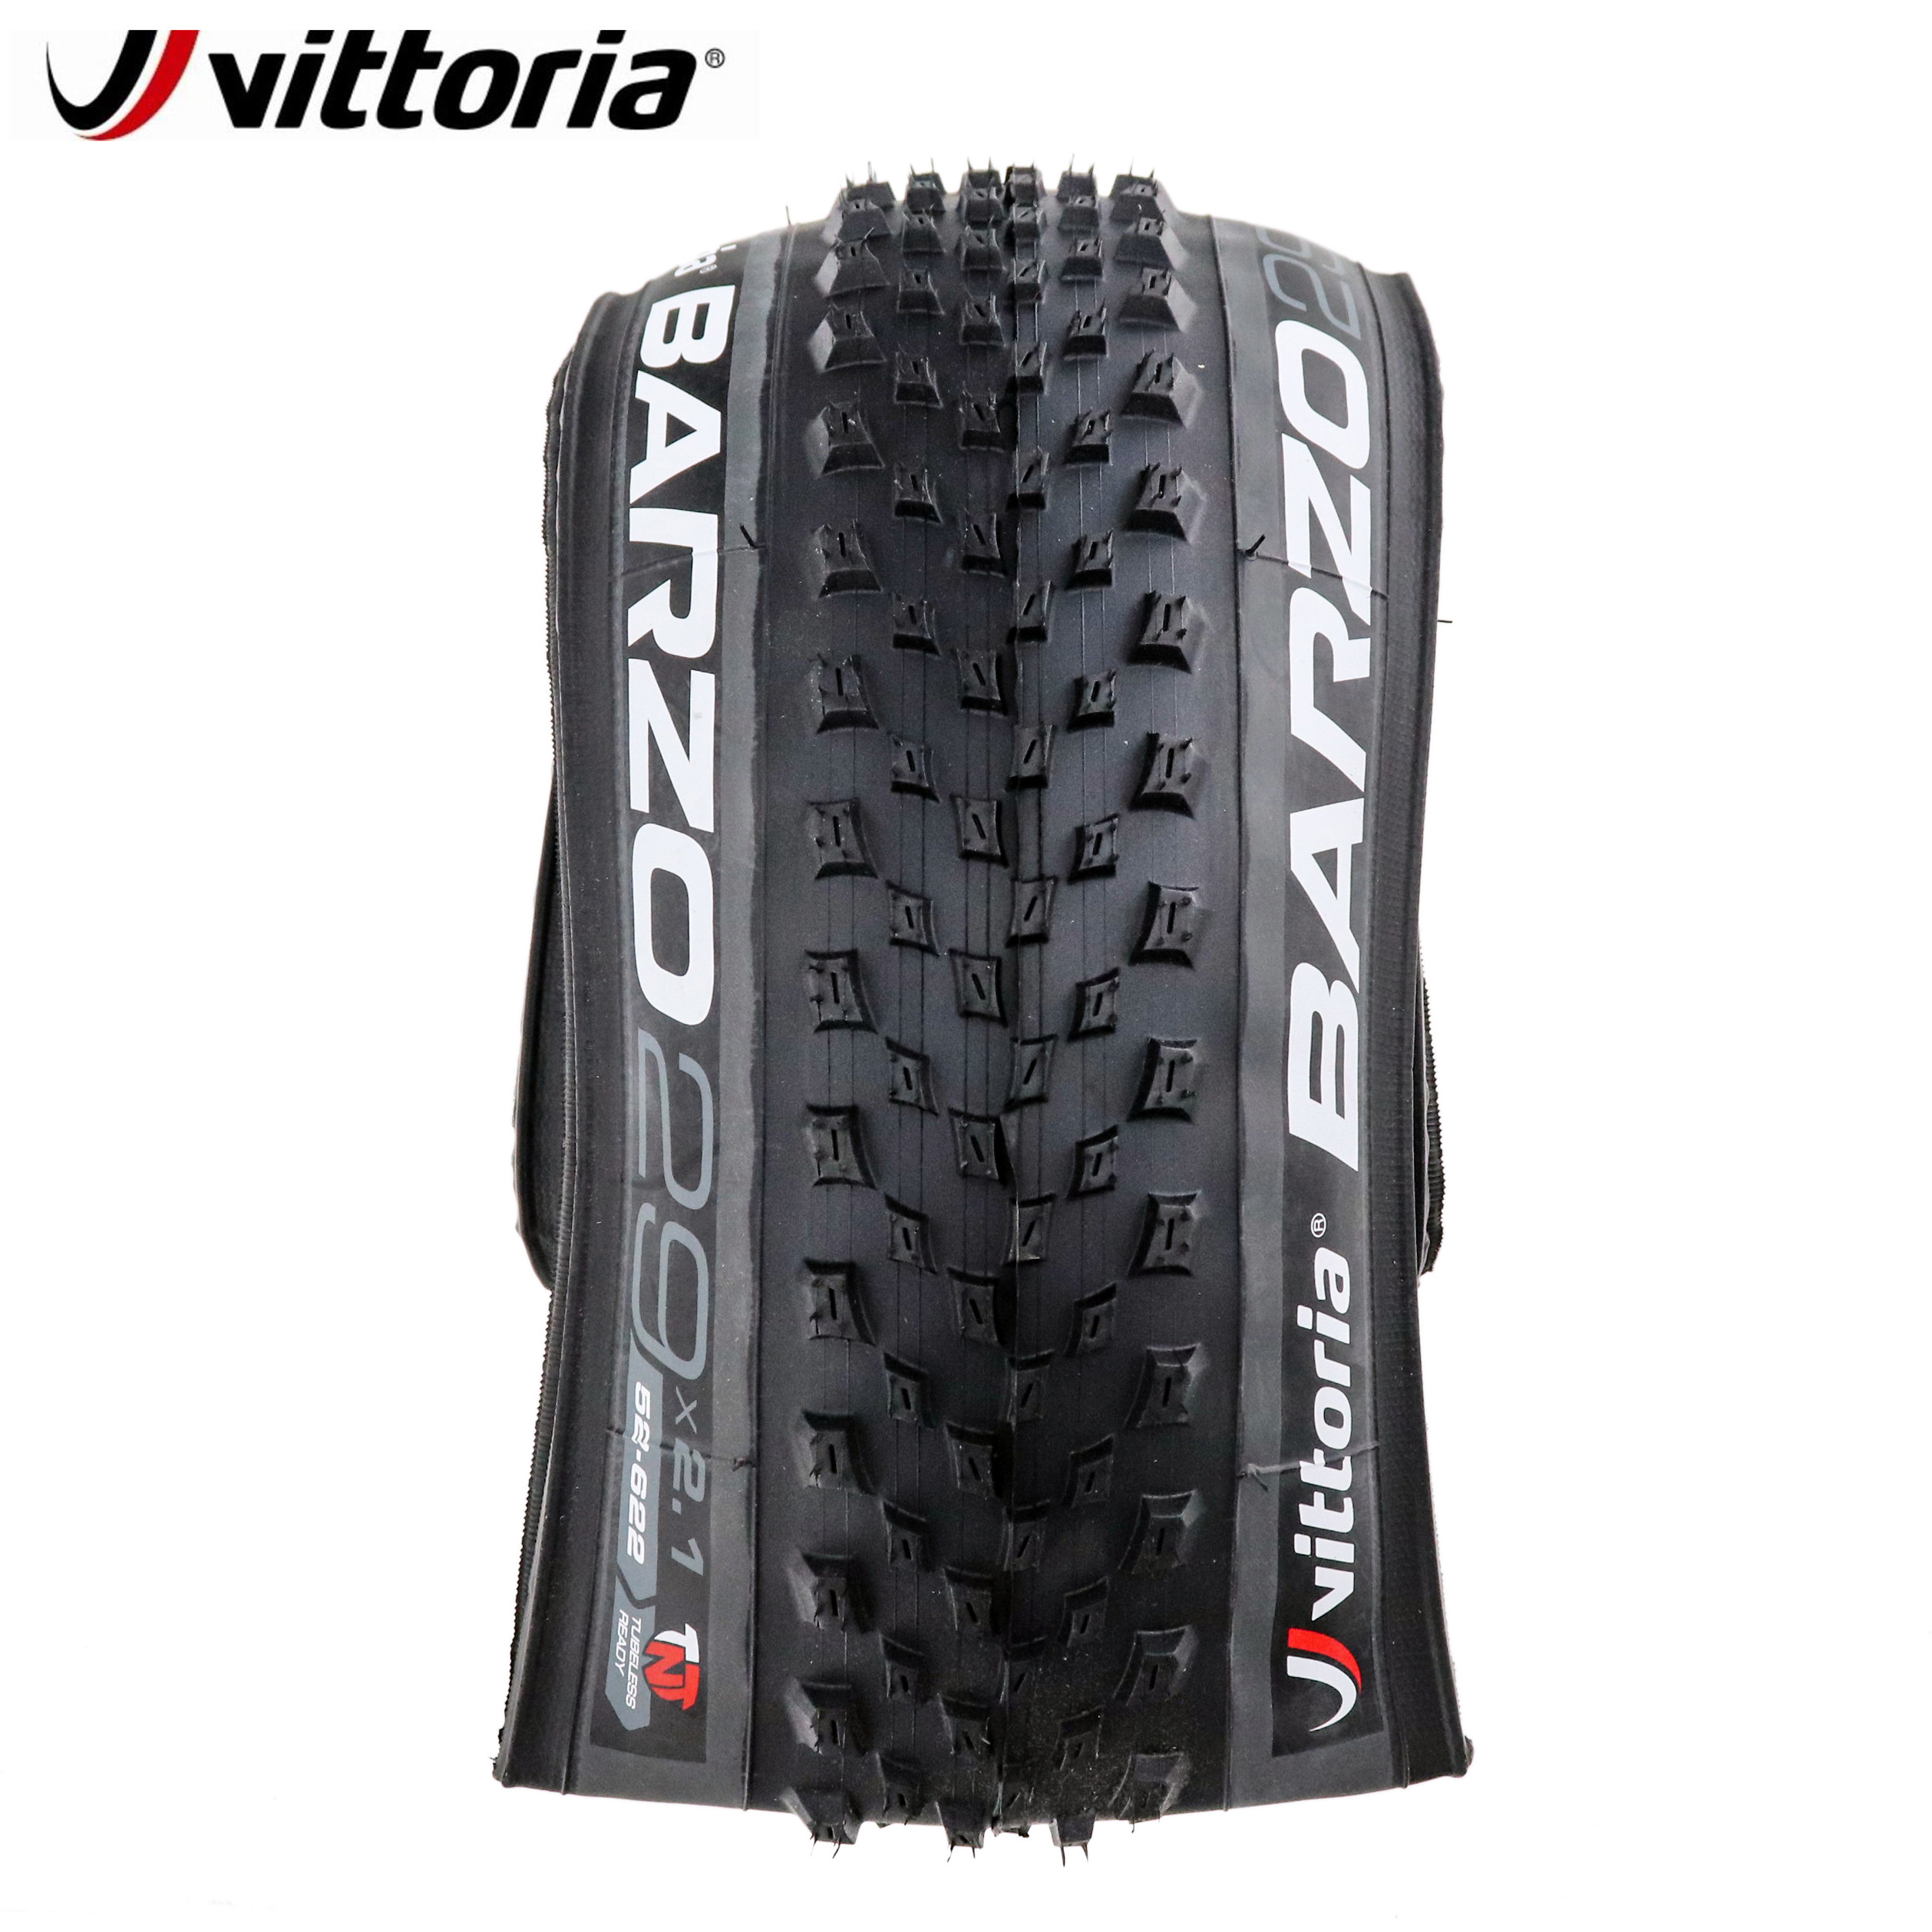 vittoria mountain bike tyres